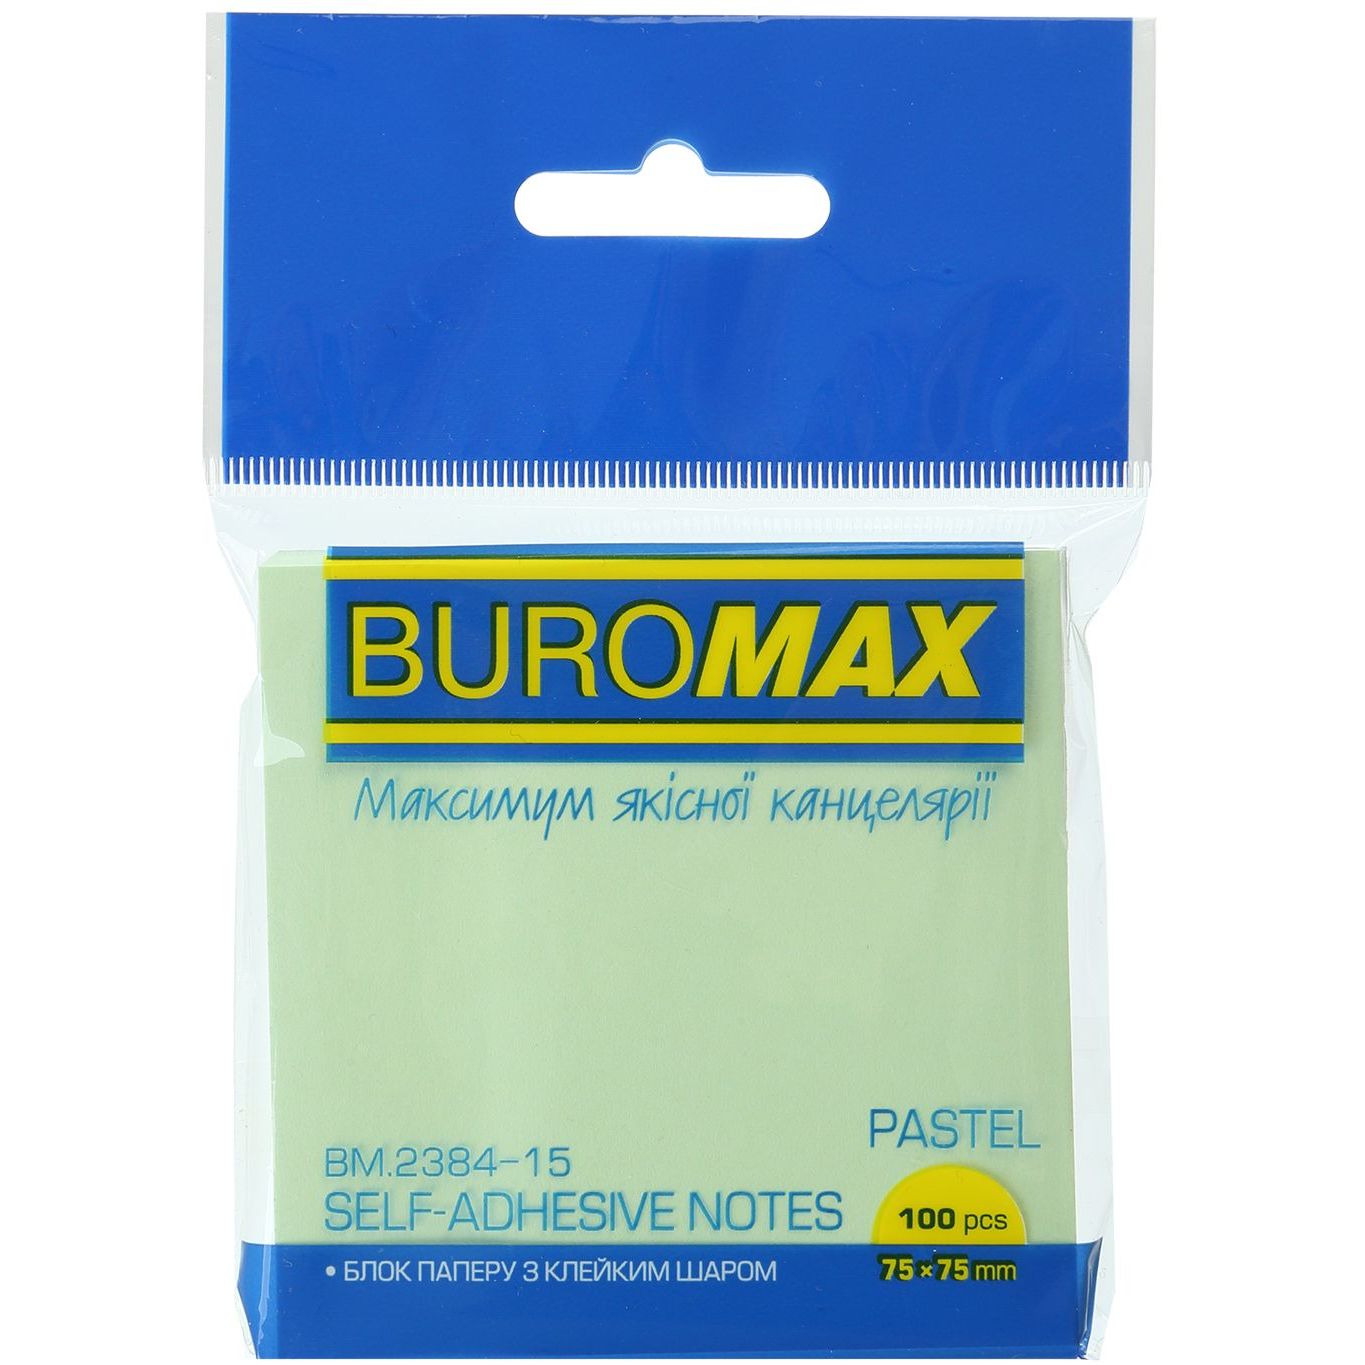 Блок бумаги для заметок Buromax Pastel с клейким слоем 75х75 мм 100 листов салатовый (BM.2384-15) - фото 1